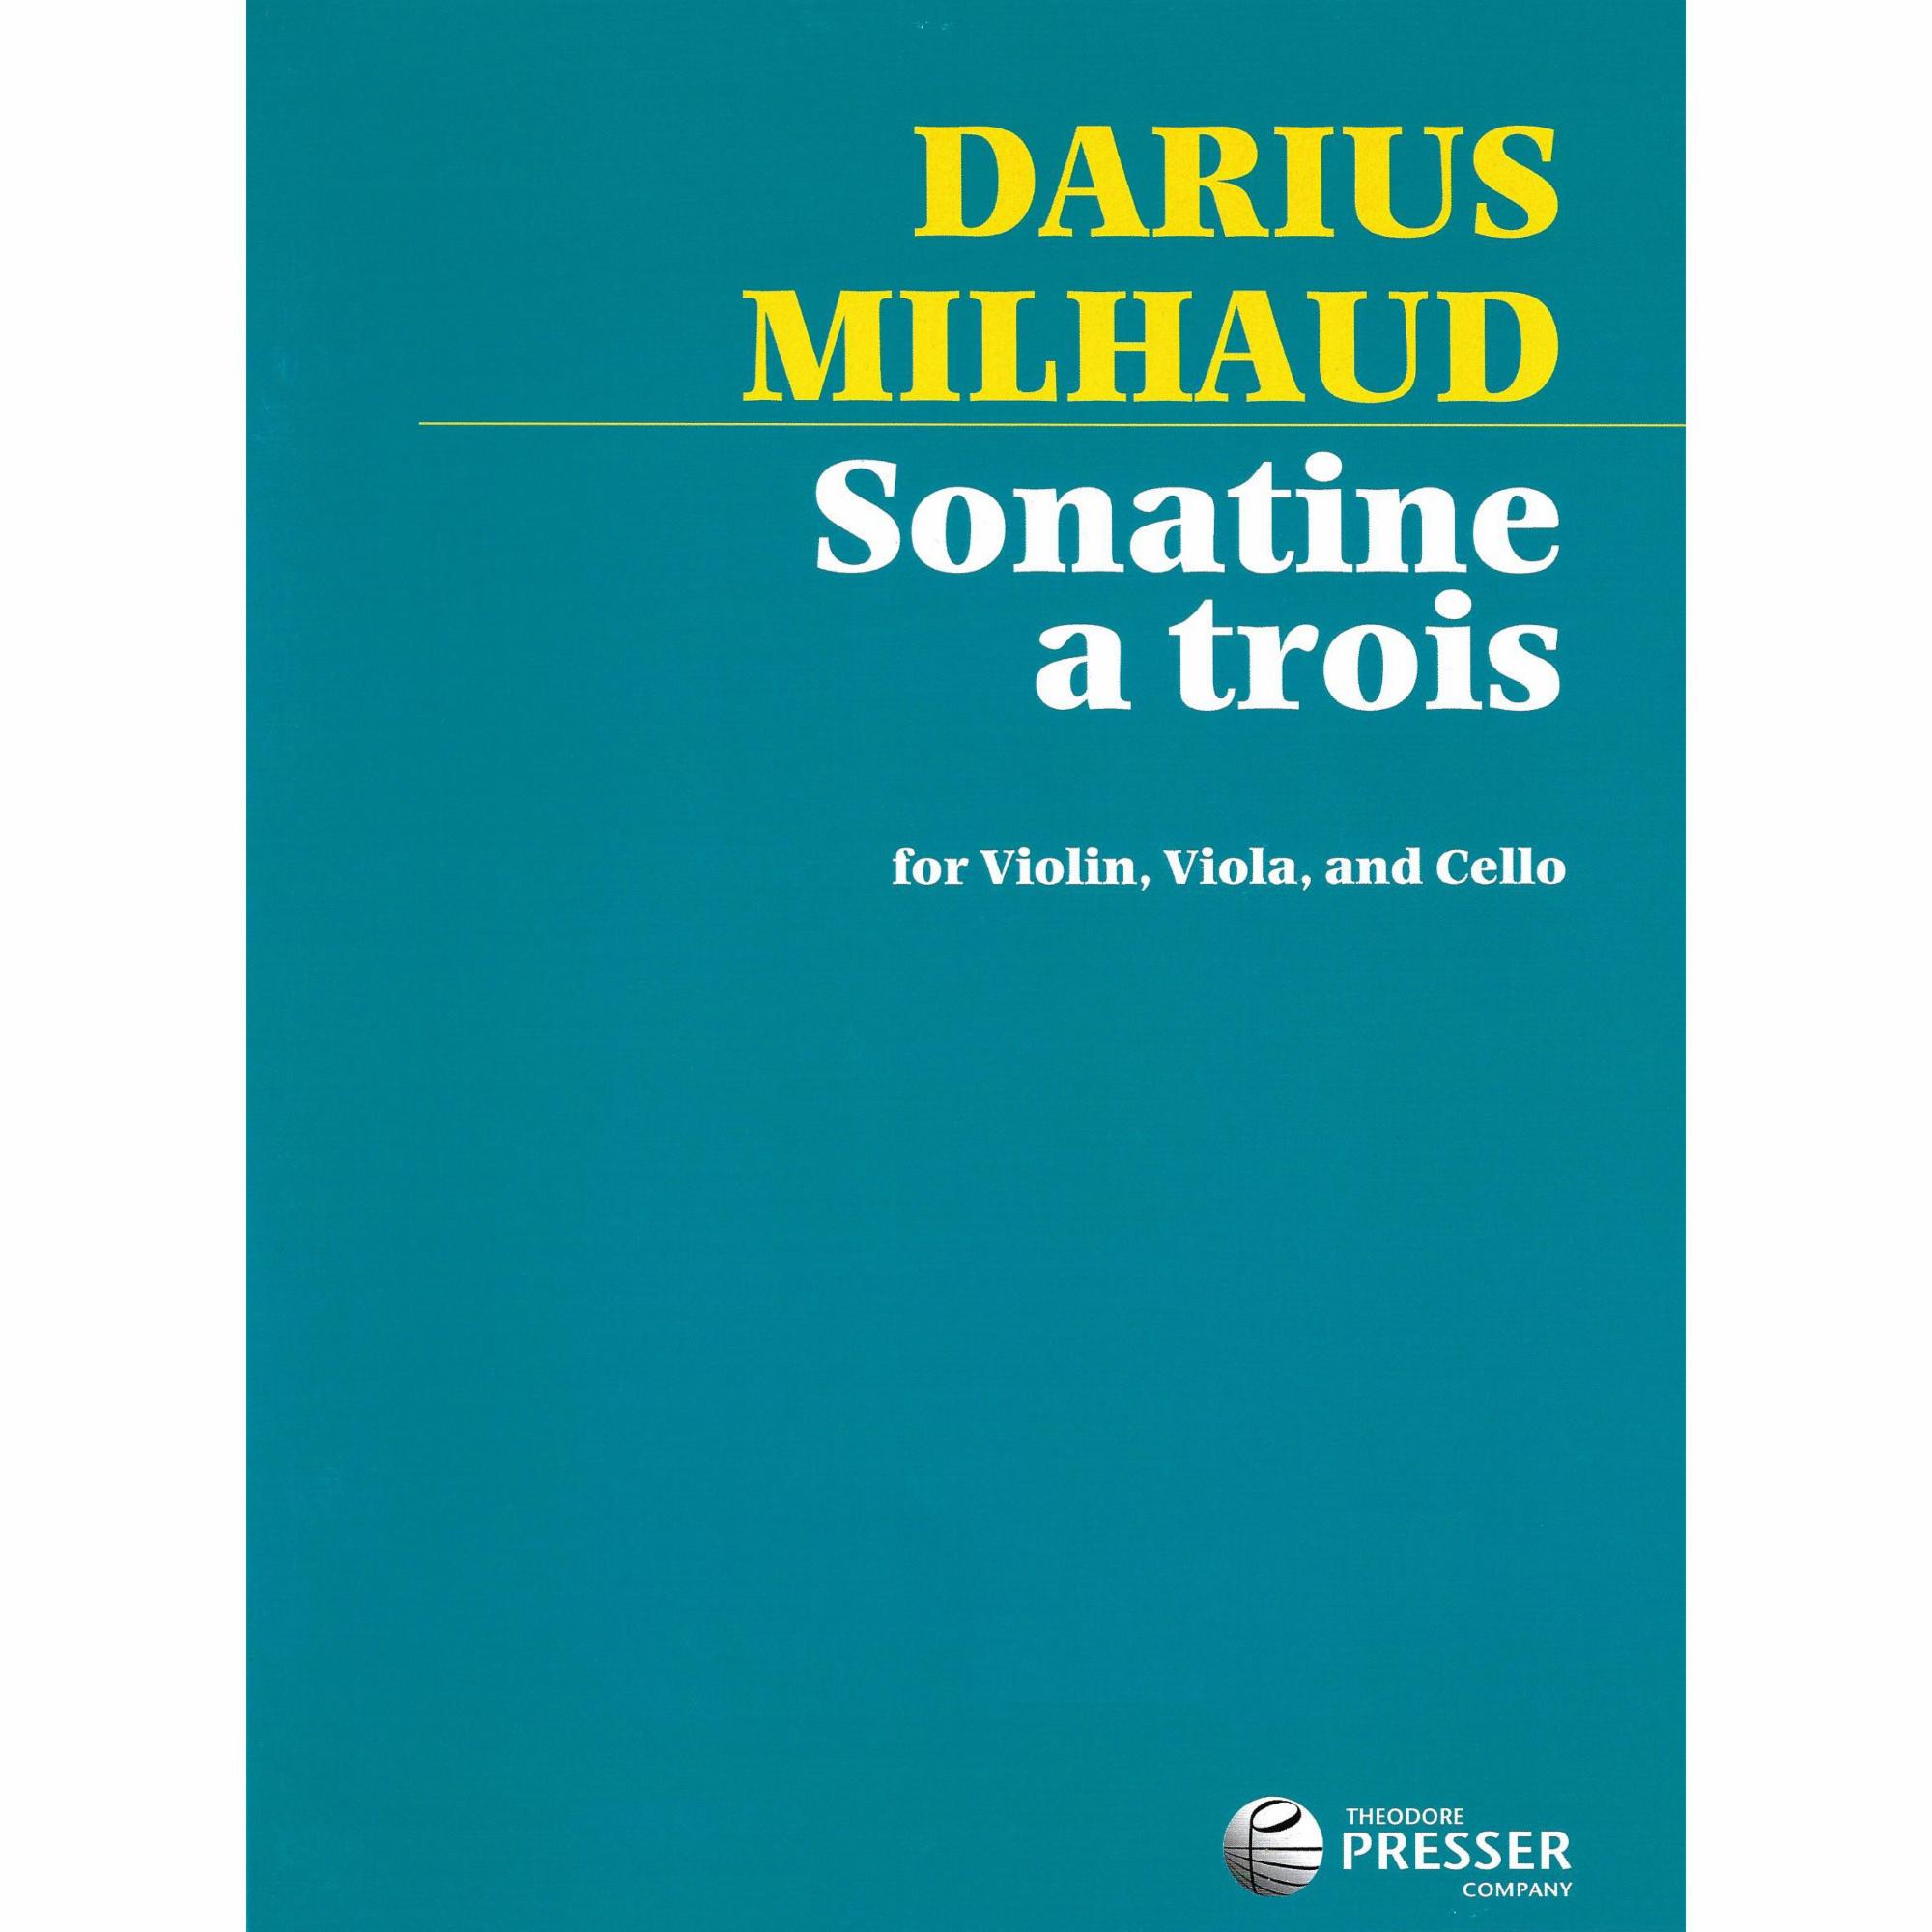 Milhaud -- Sonatine a trois for Violin, Viola, and Cello